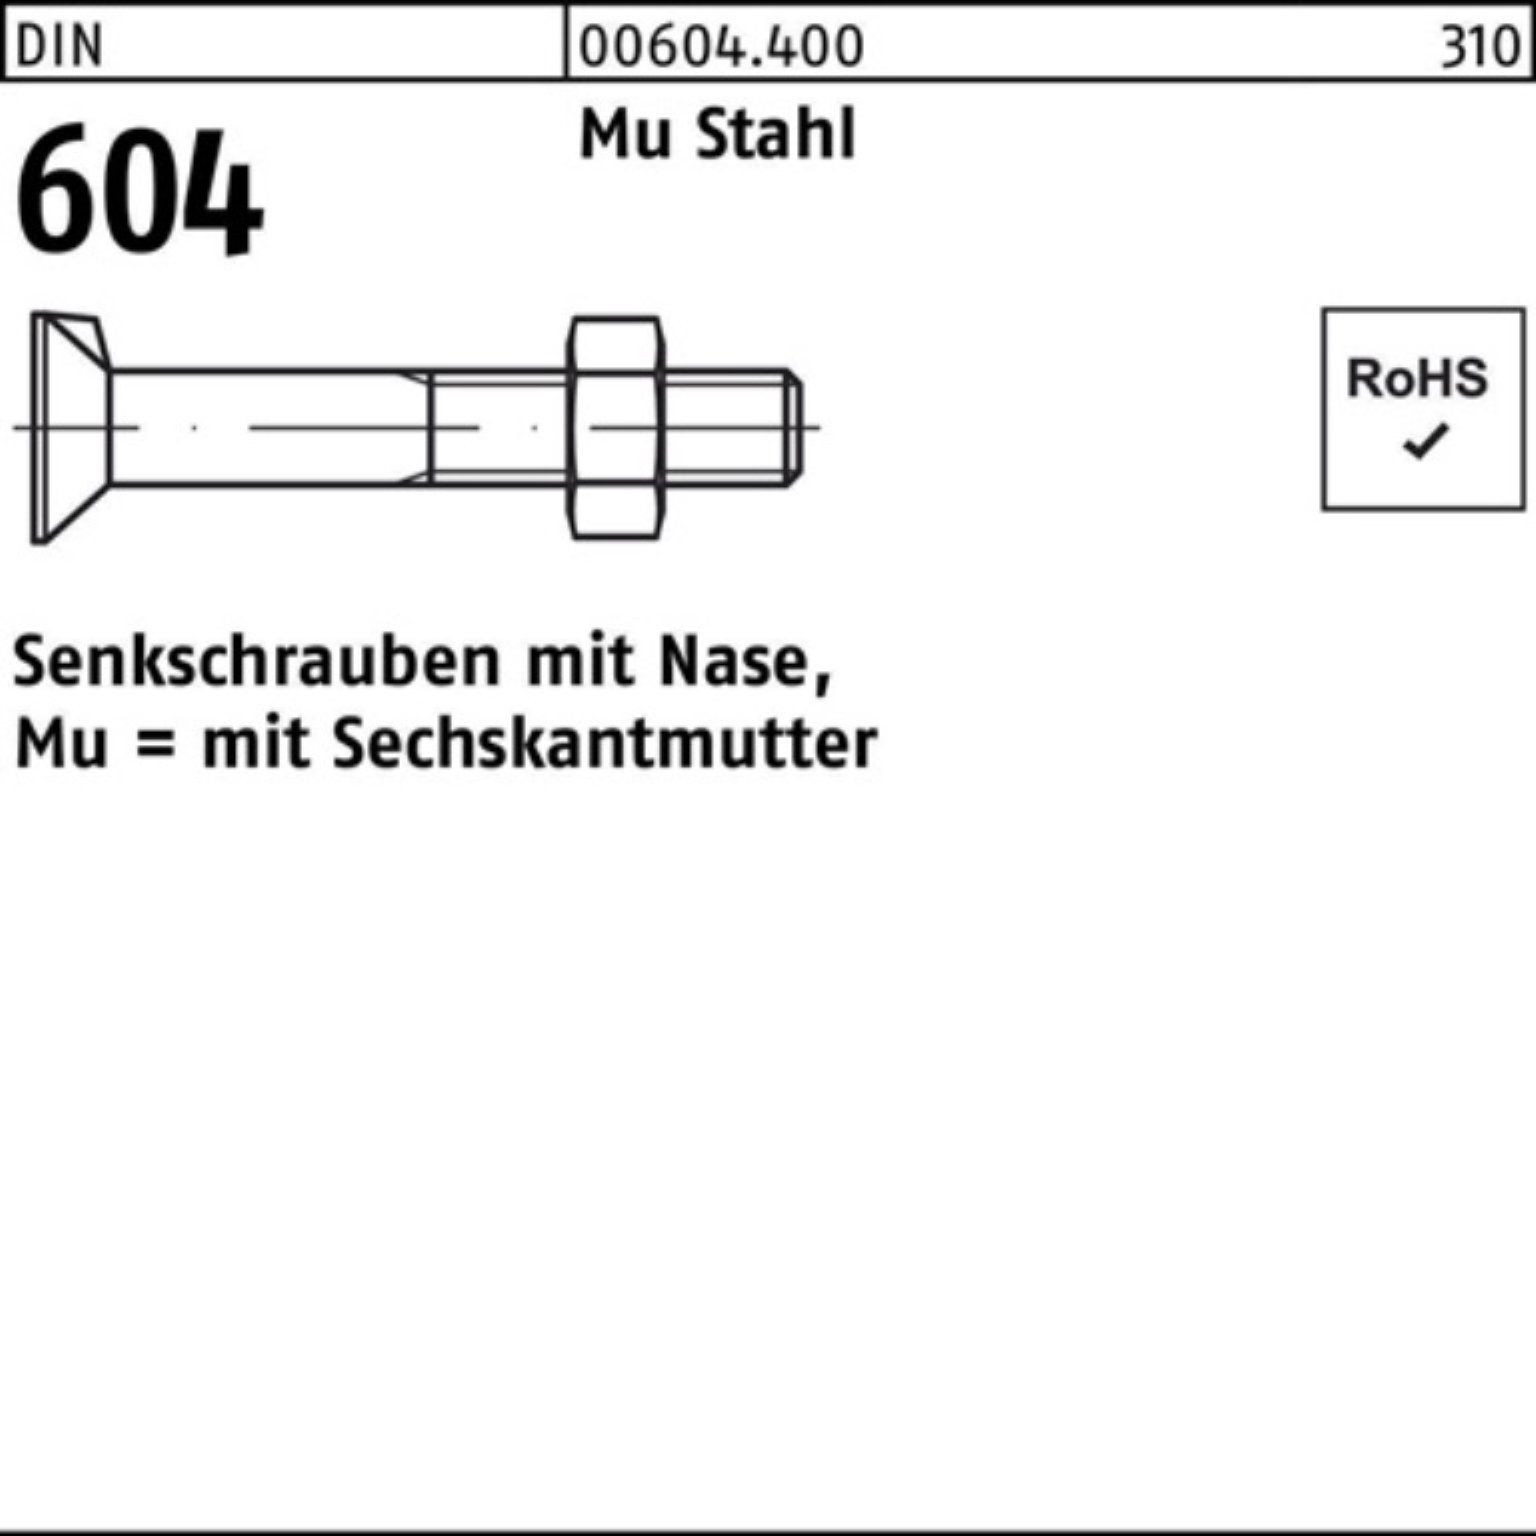 Reyher Senkschraube 200er Pack 604 Senkschraube Stahl M10x DIN 4.6 Mu Nase/6-ktmutter 25 2